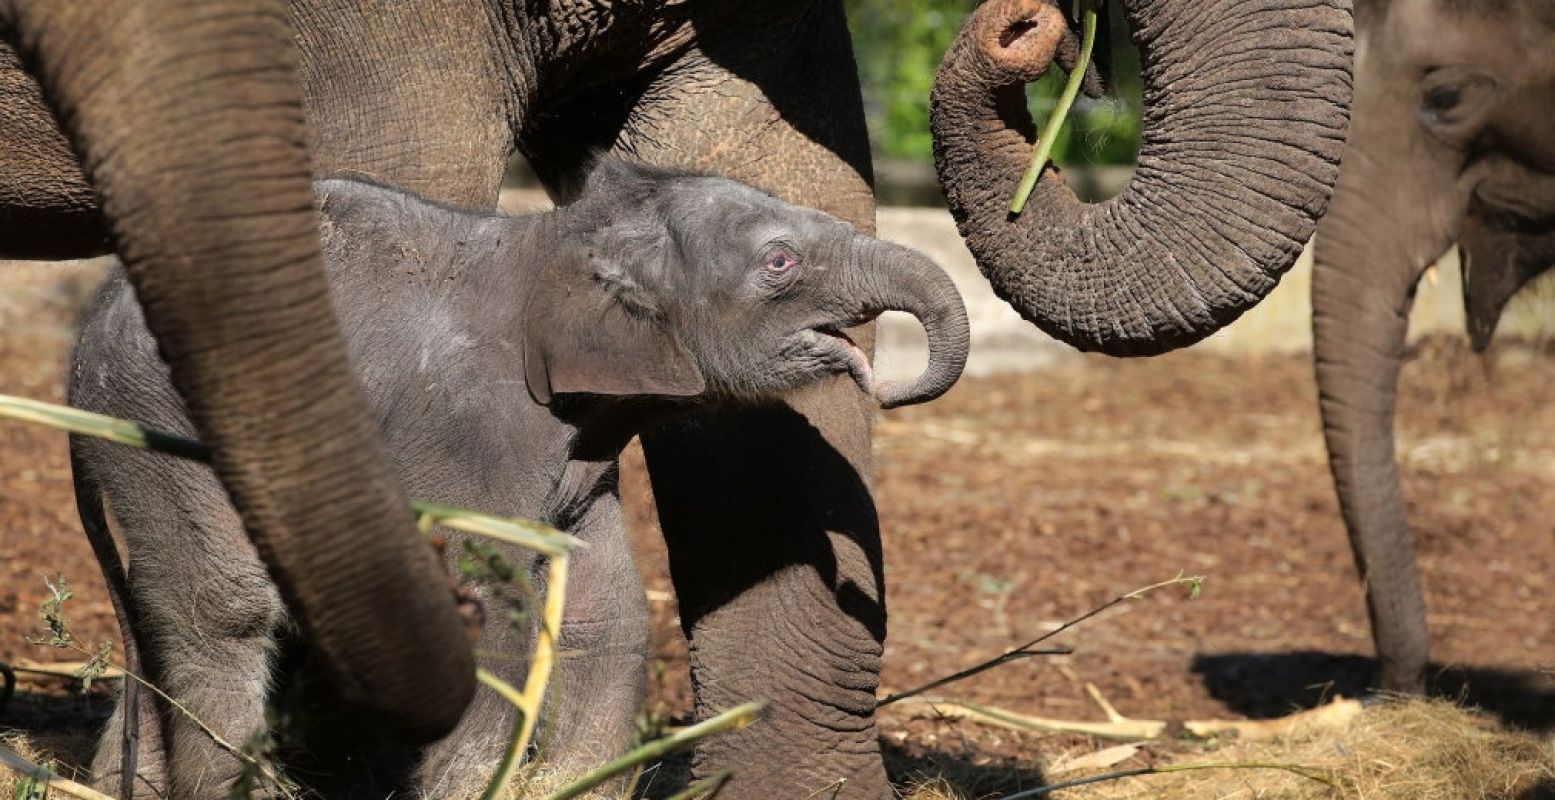 Bezoekers van ARTIS kunnen het pasgeboren olifantje bewonderen. Foto: ARTIS, Ronald van Weeren.